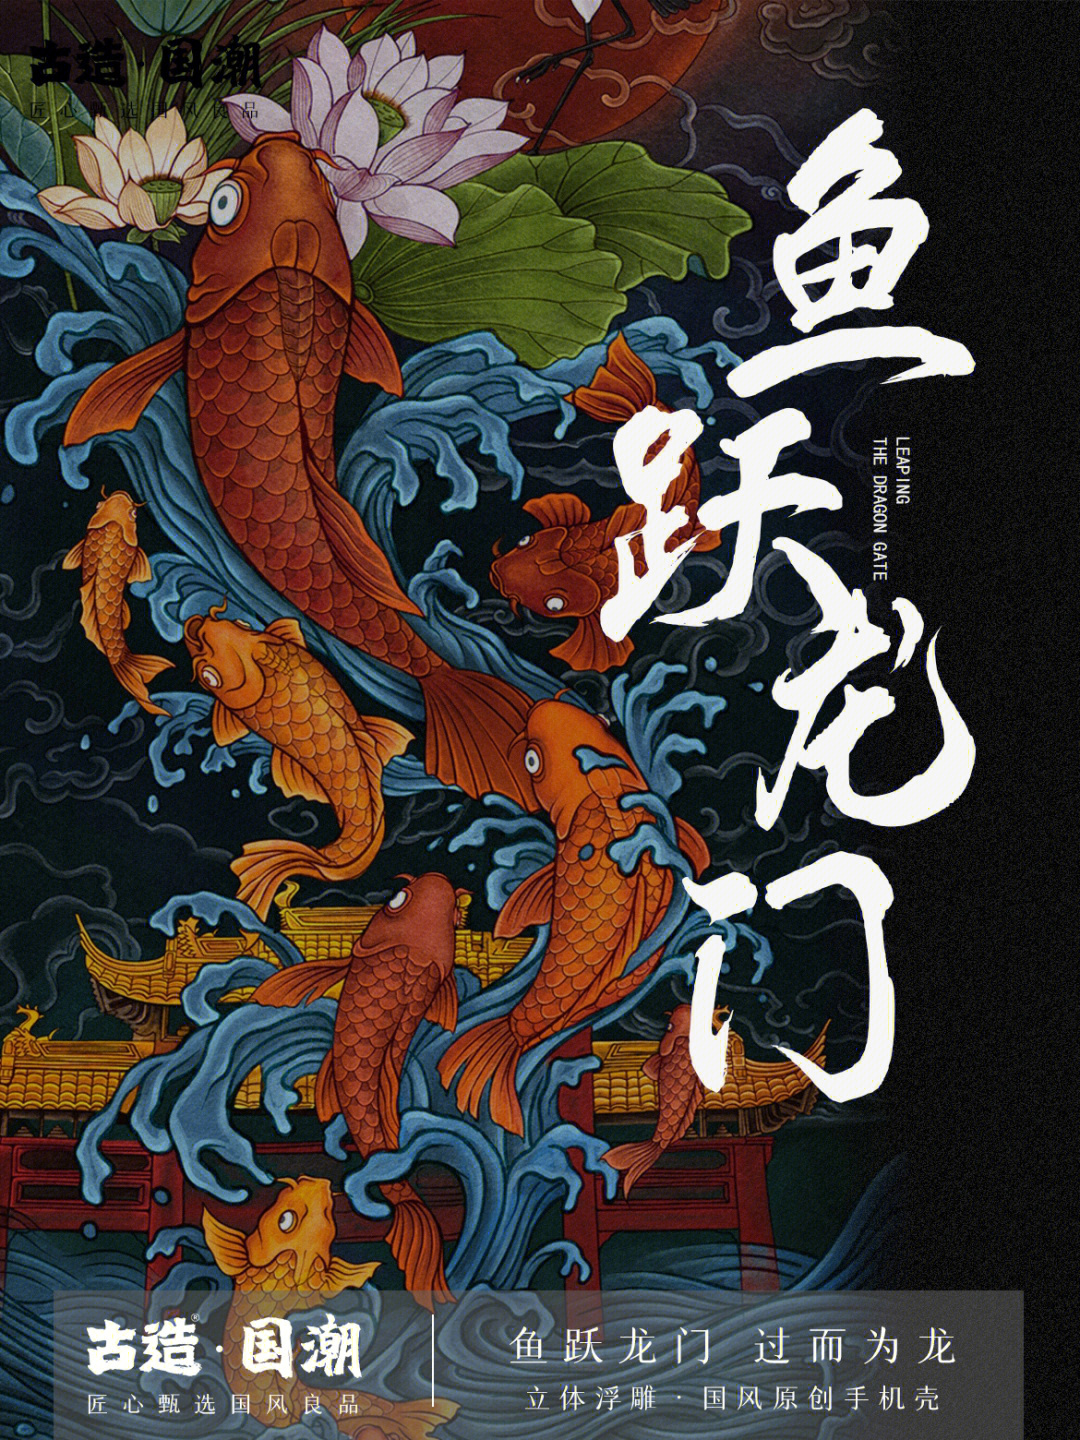 在古代中国传说中,鲤鱼跃过龙门就会化身龙